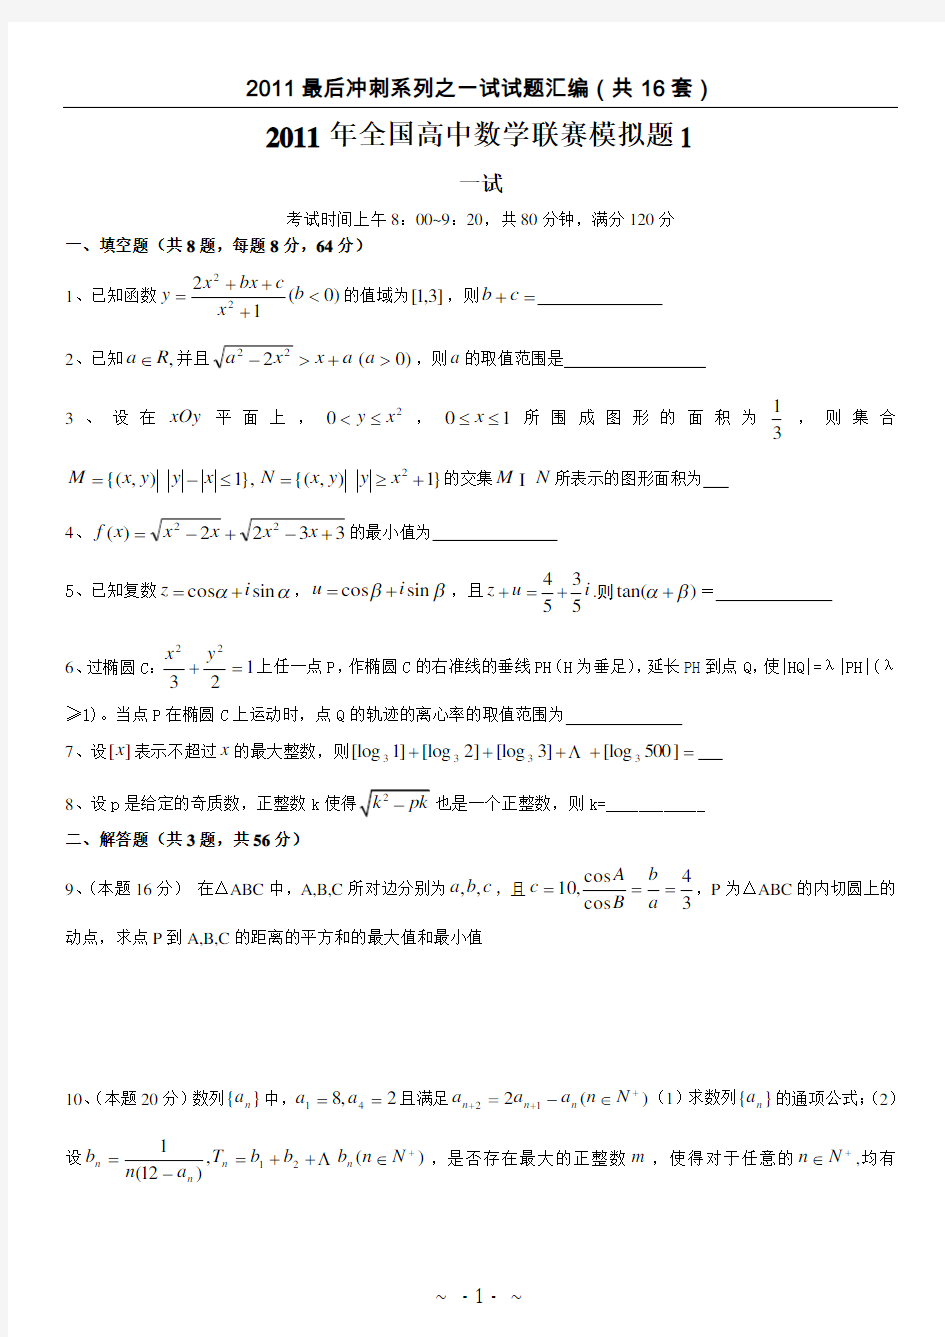 (完整word版)No.49全国高中数学联合竞赛模拟试题